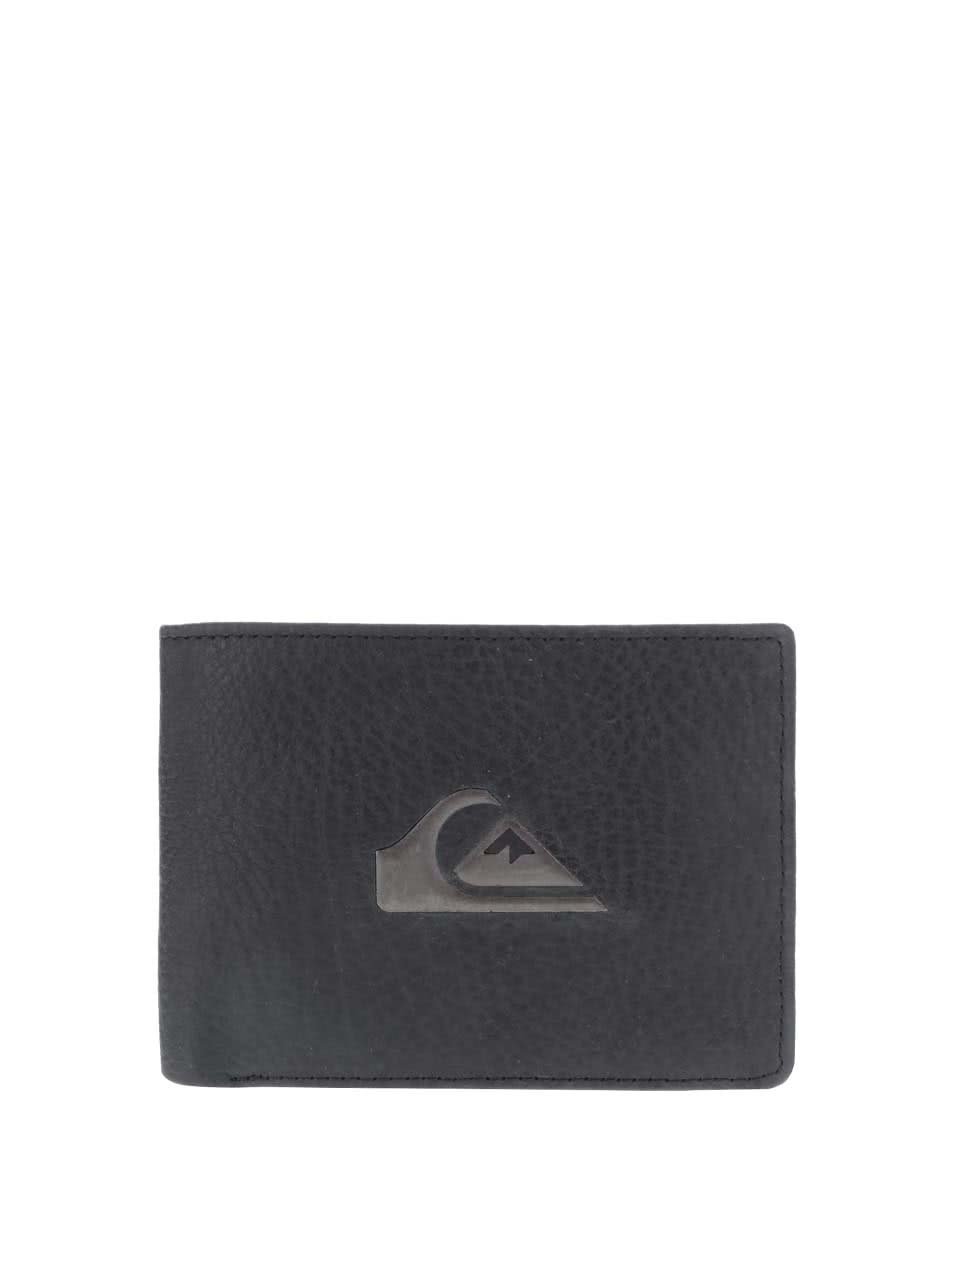 Černá pánská kožená peněženka s logem Quiksilver Miss Dollar